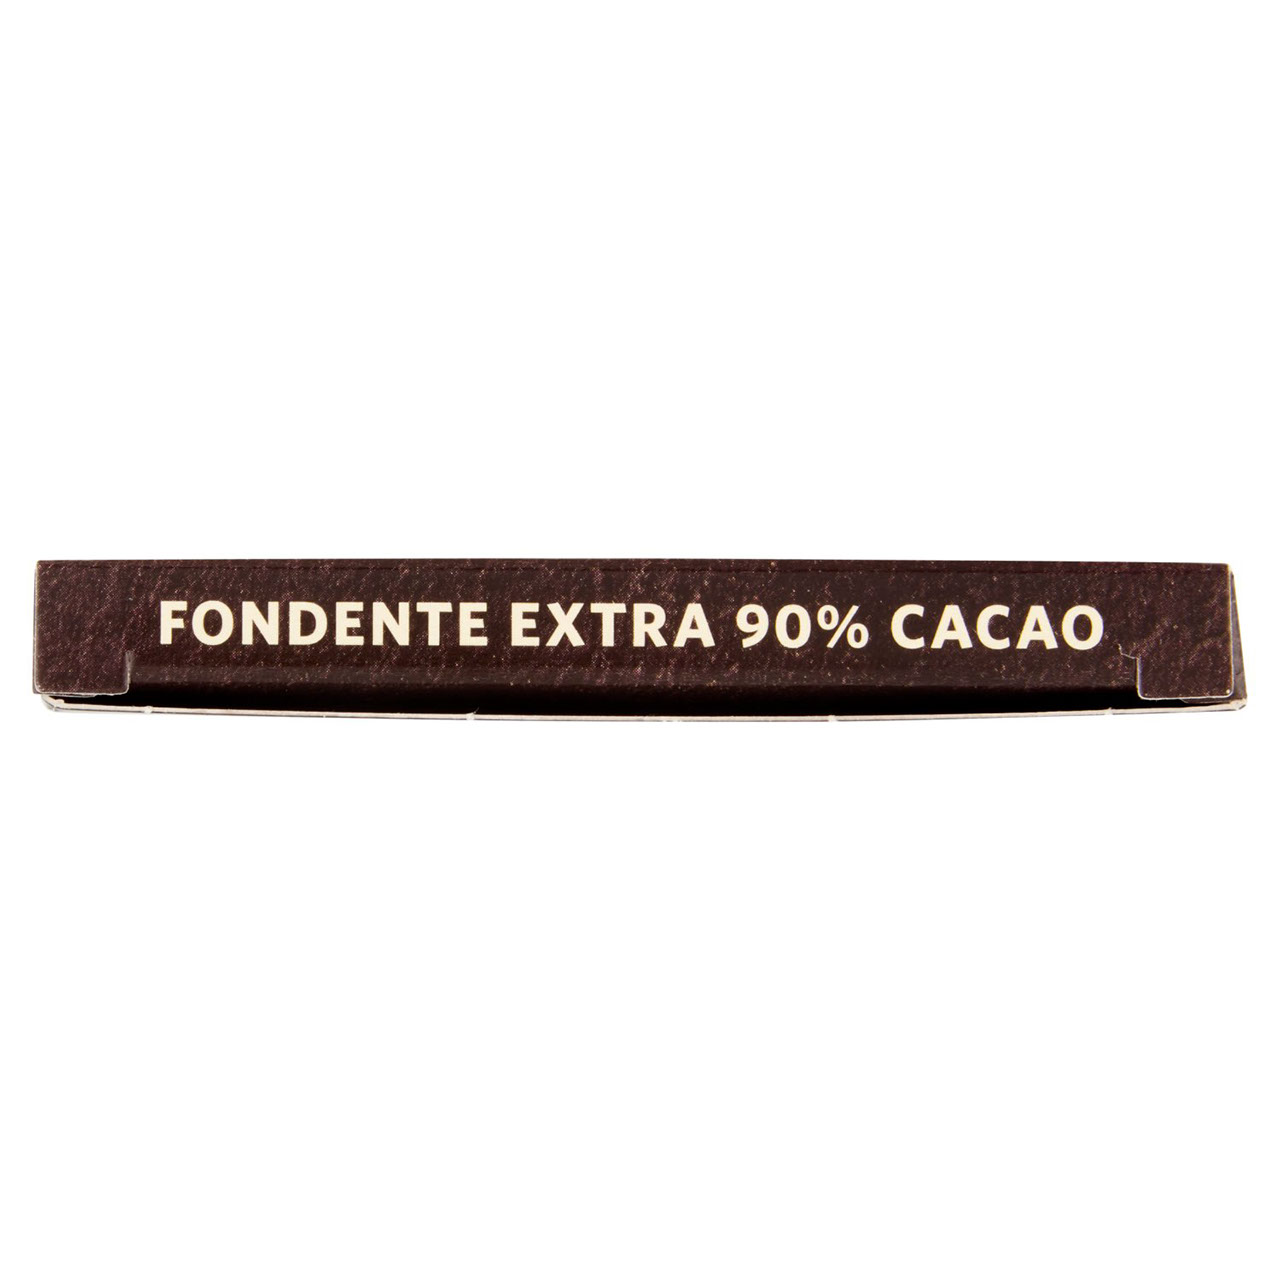 Fondente Extra 90% Cacao 100 g Conad